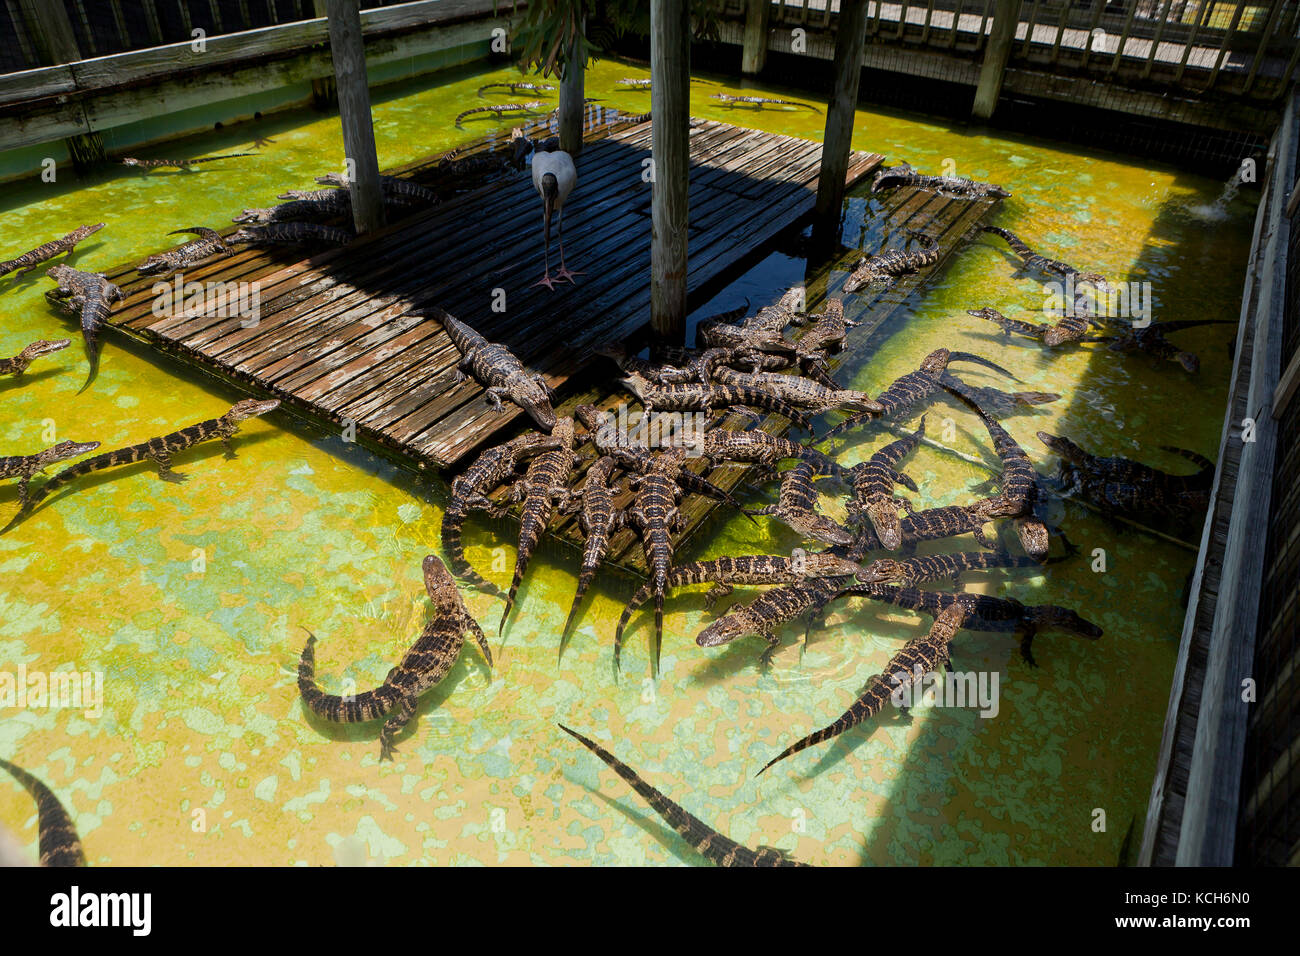 Les jeunes alligators (Alligator mississippiensis) basking dans sun à Gatorland - Orlando, Floride USA Banque D'Images